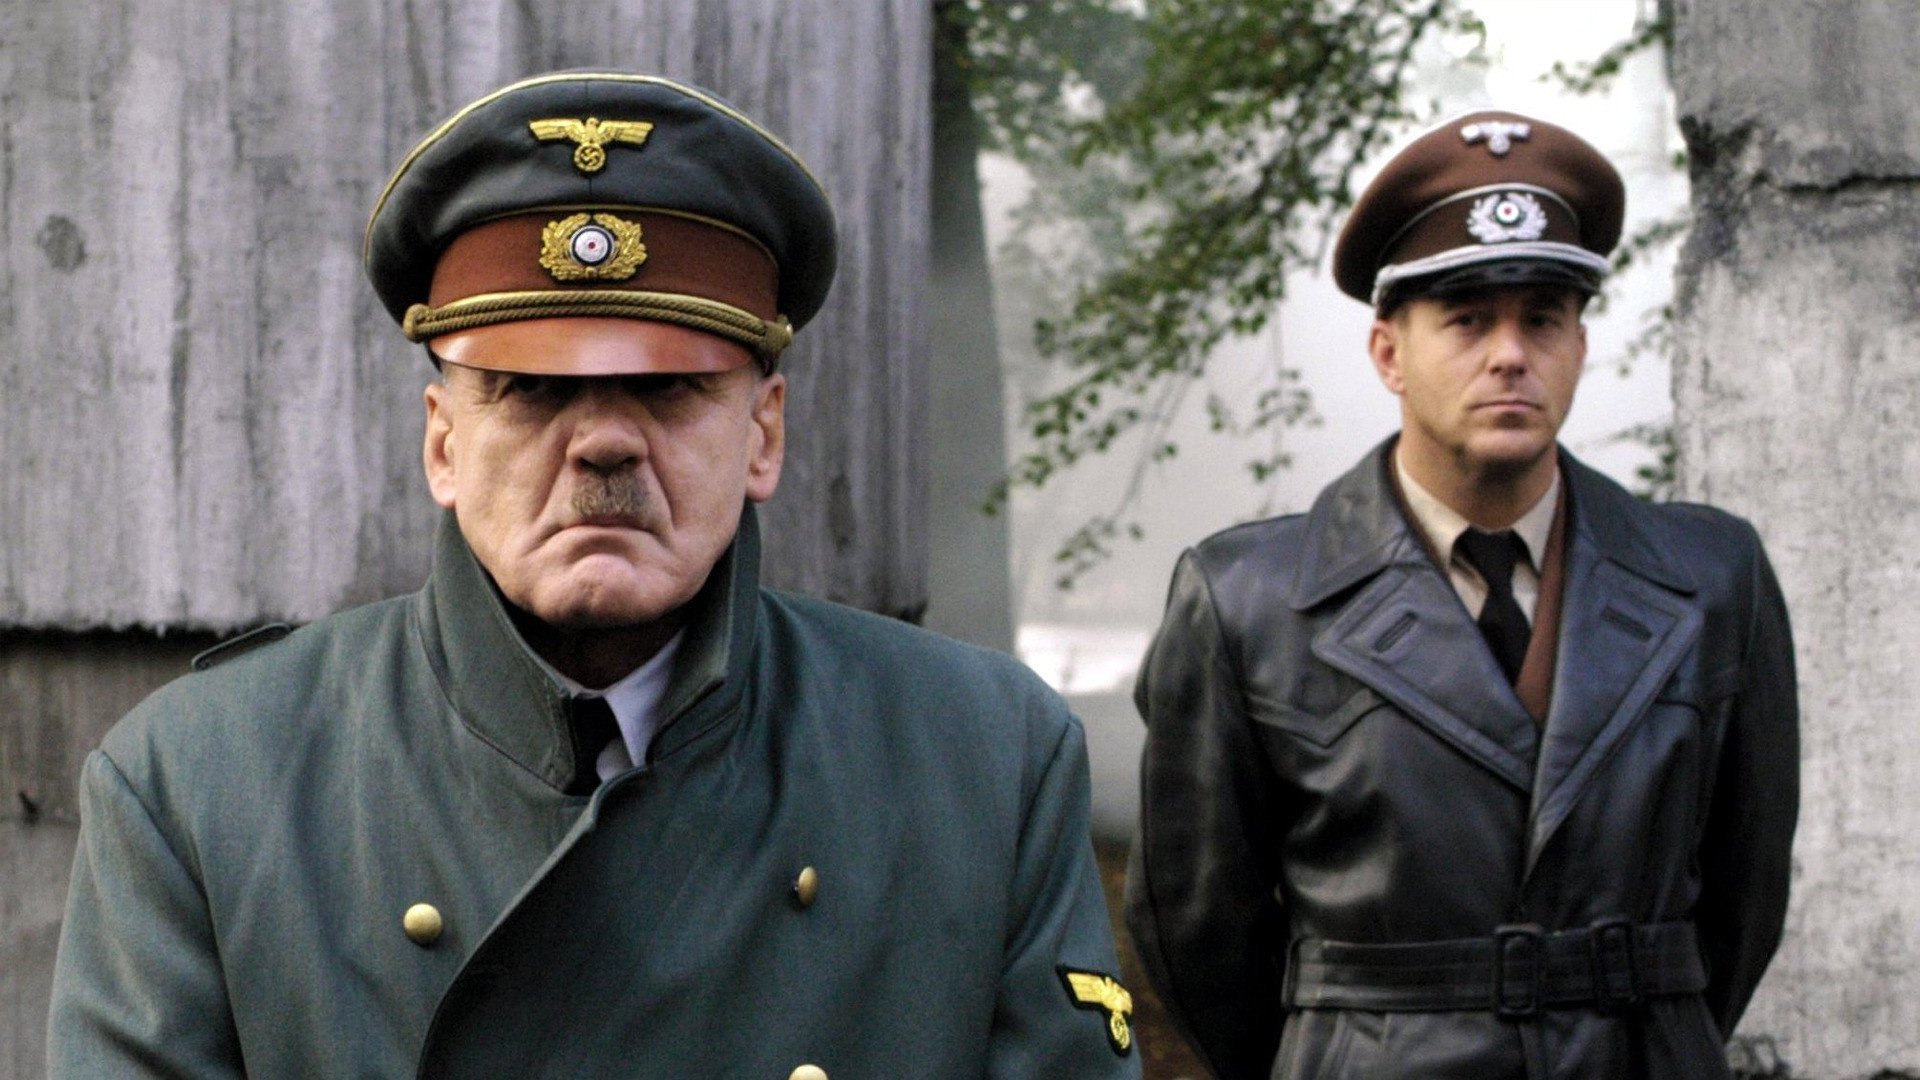 Undergången - Hitler och tredje rikets fall